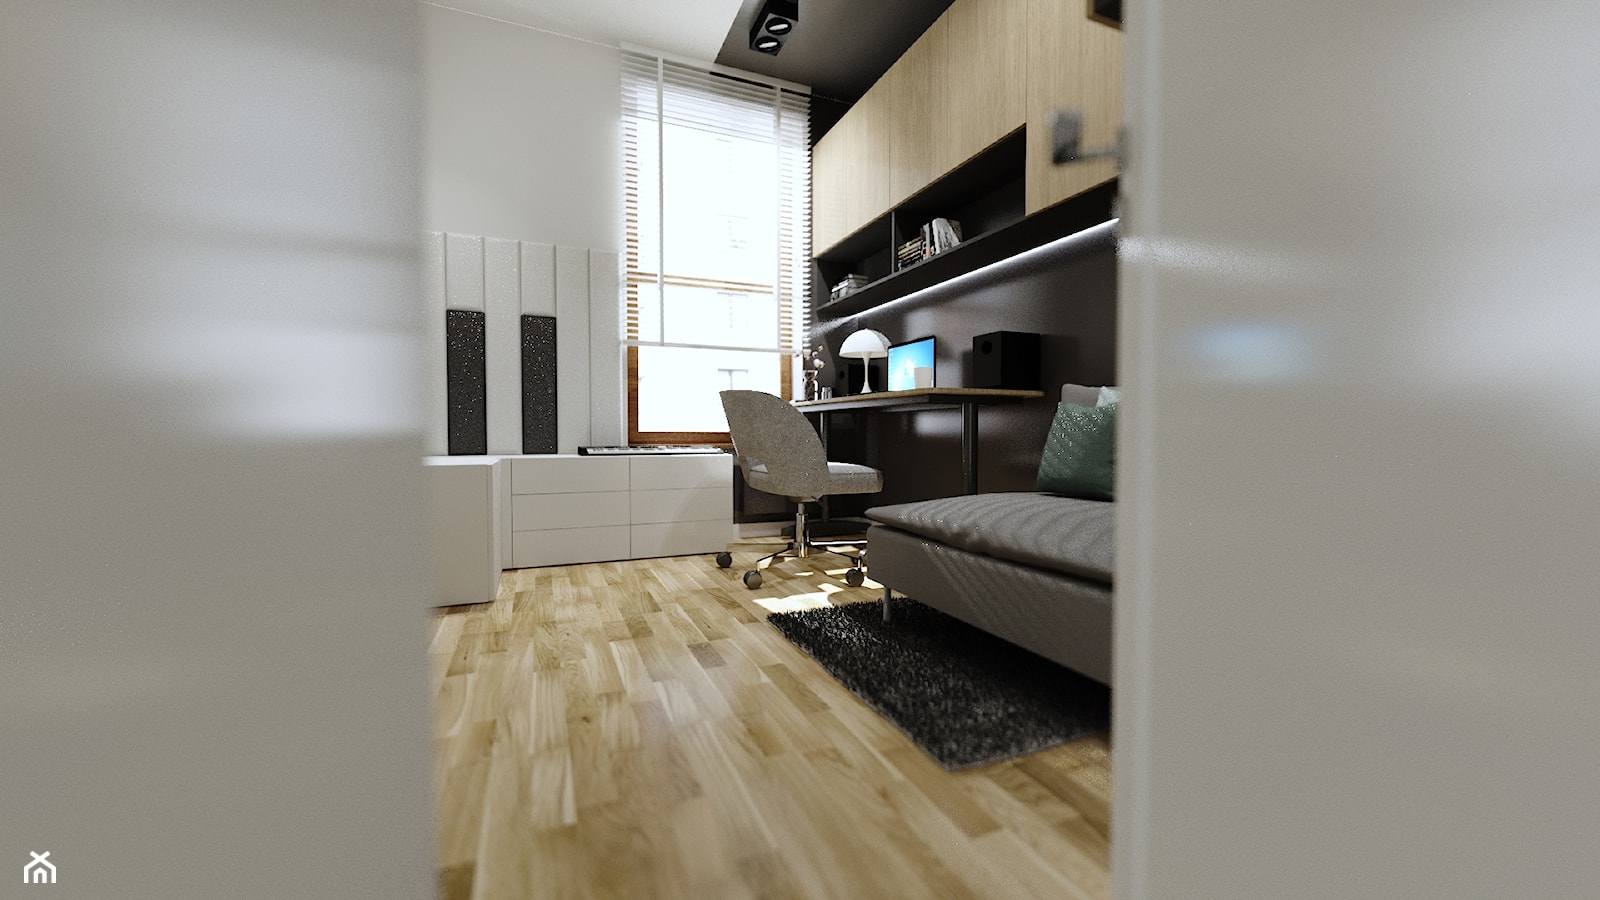 3w1 na 8,5 m2 - Biuro, styl nowoczesny - zdjęcie od Malooka Studio - Homebook